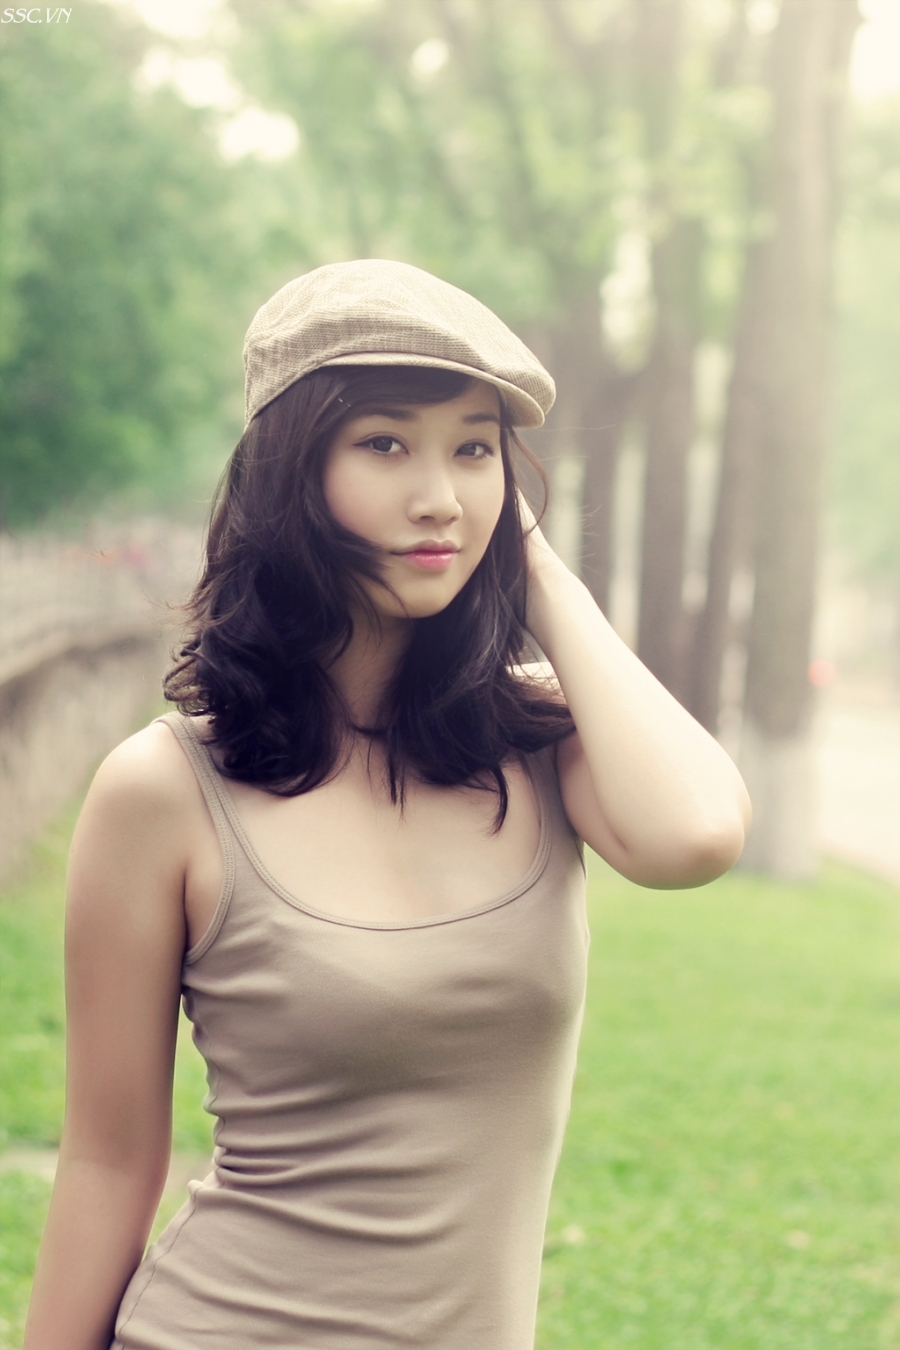 Hình ảnh nóng bỏng của người mẫu Linh Phương